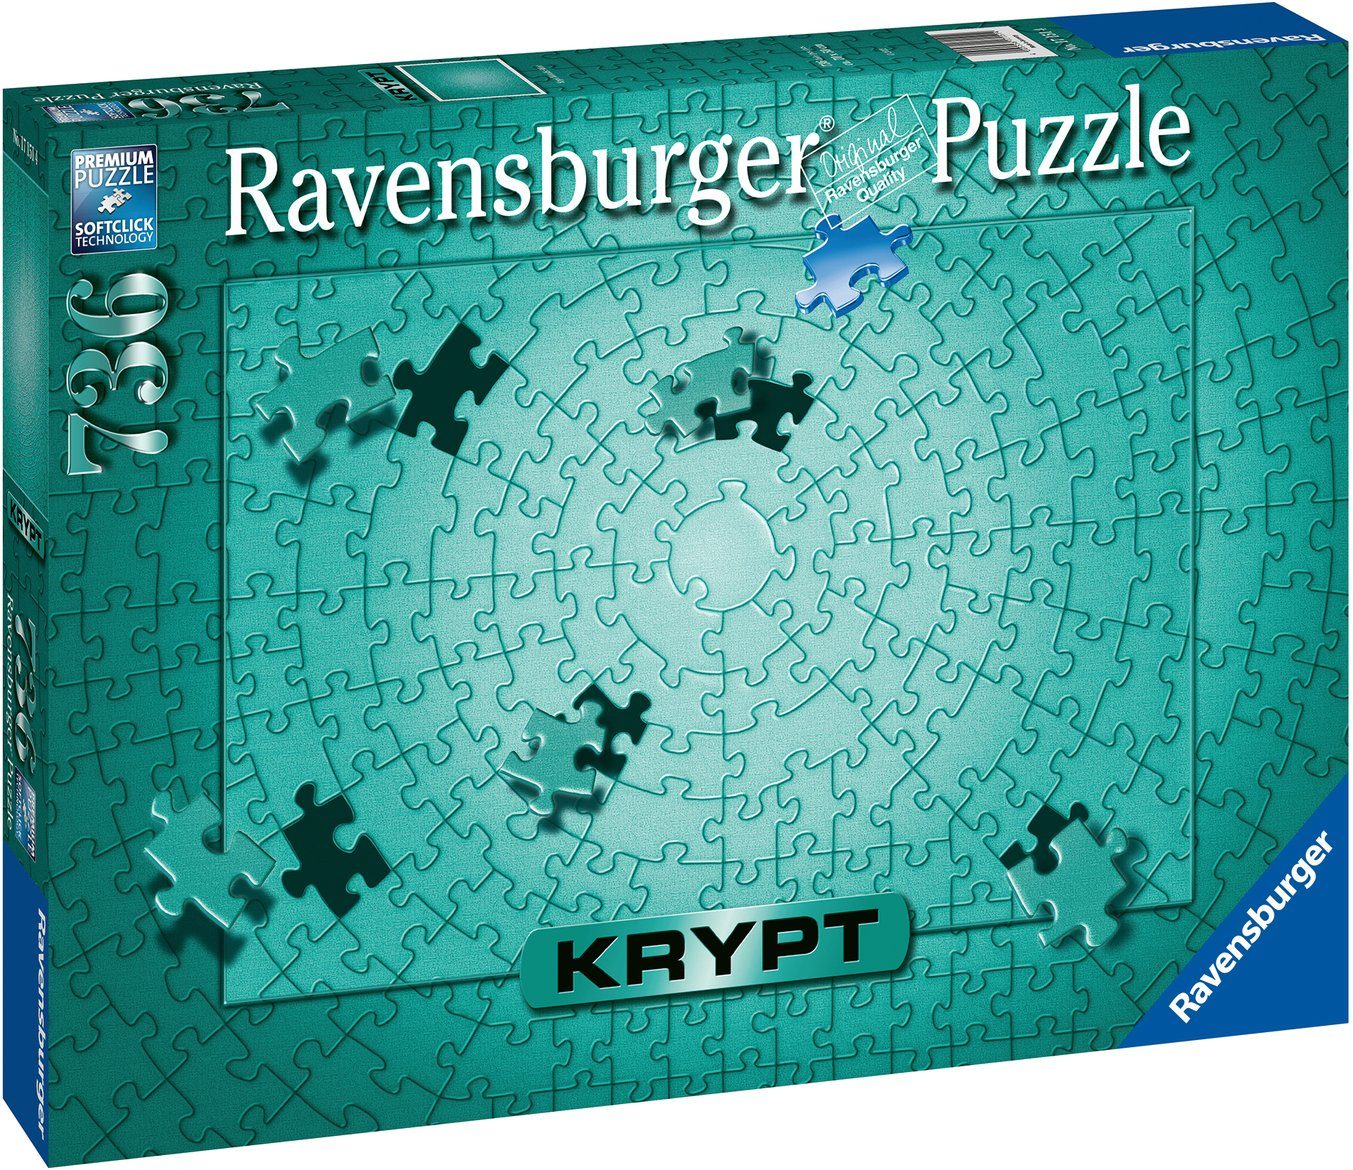 Ravensburger Puzzle Krypt Metallic Mint, Germany, Puzzleteile, Wald in - FSC® - schützt weltweit 736 Made